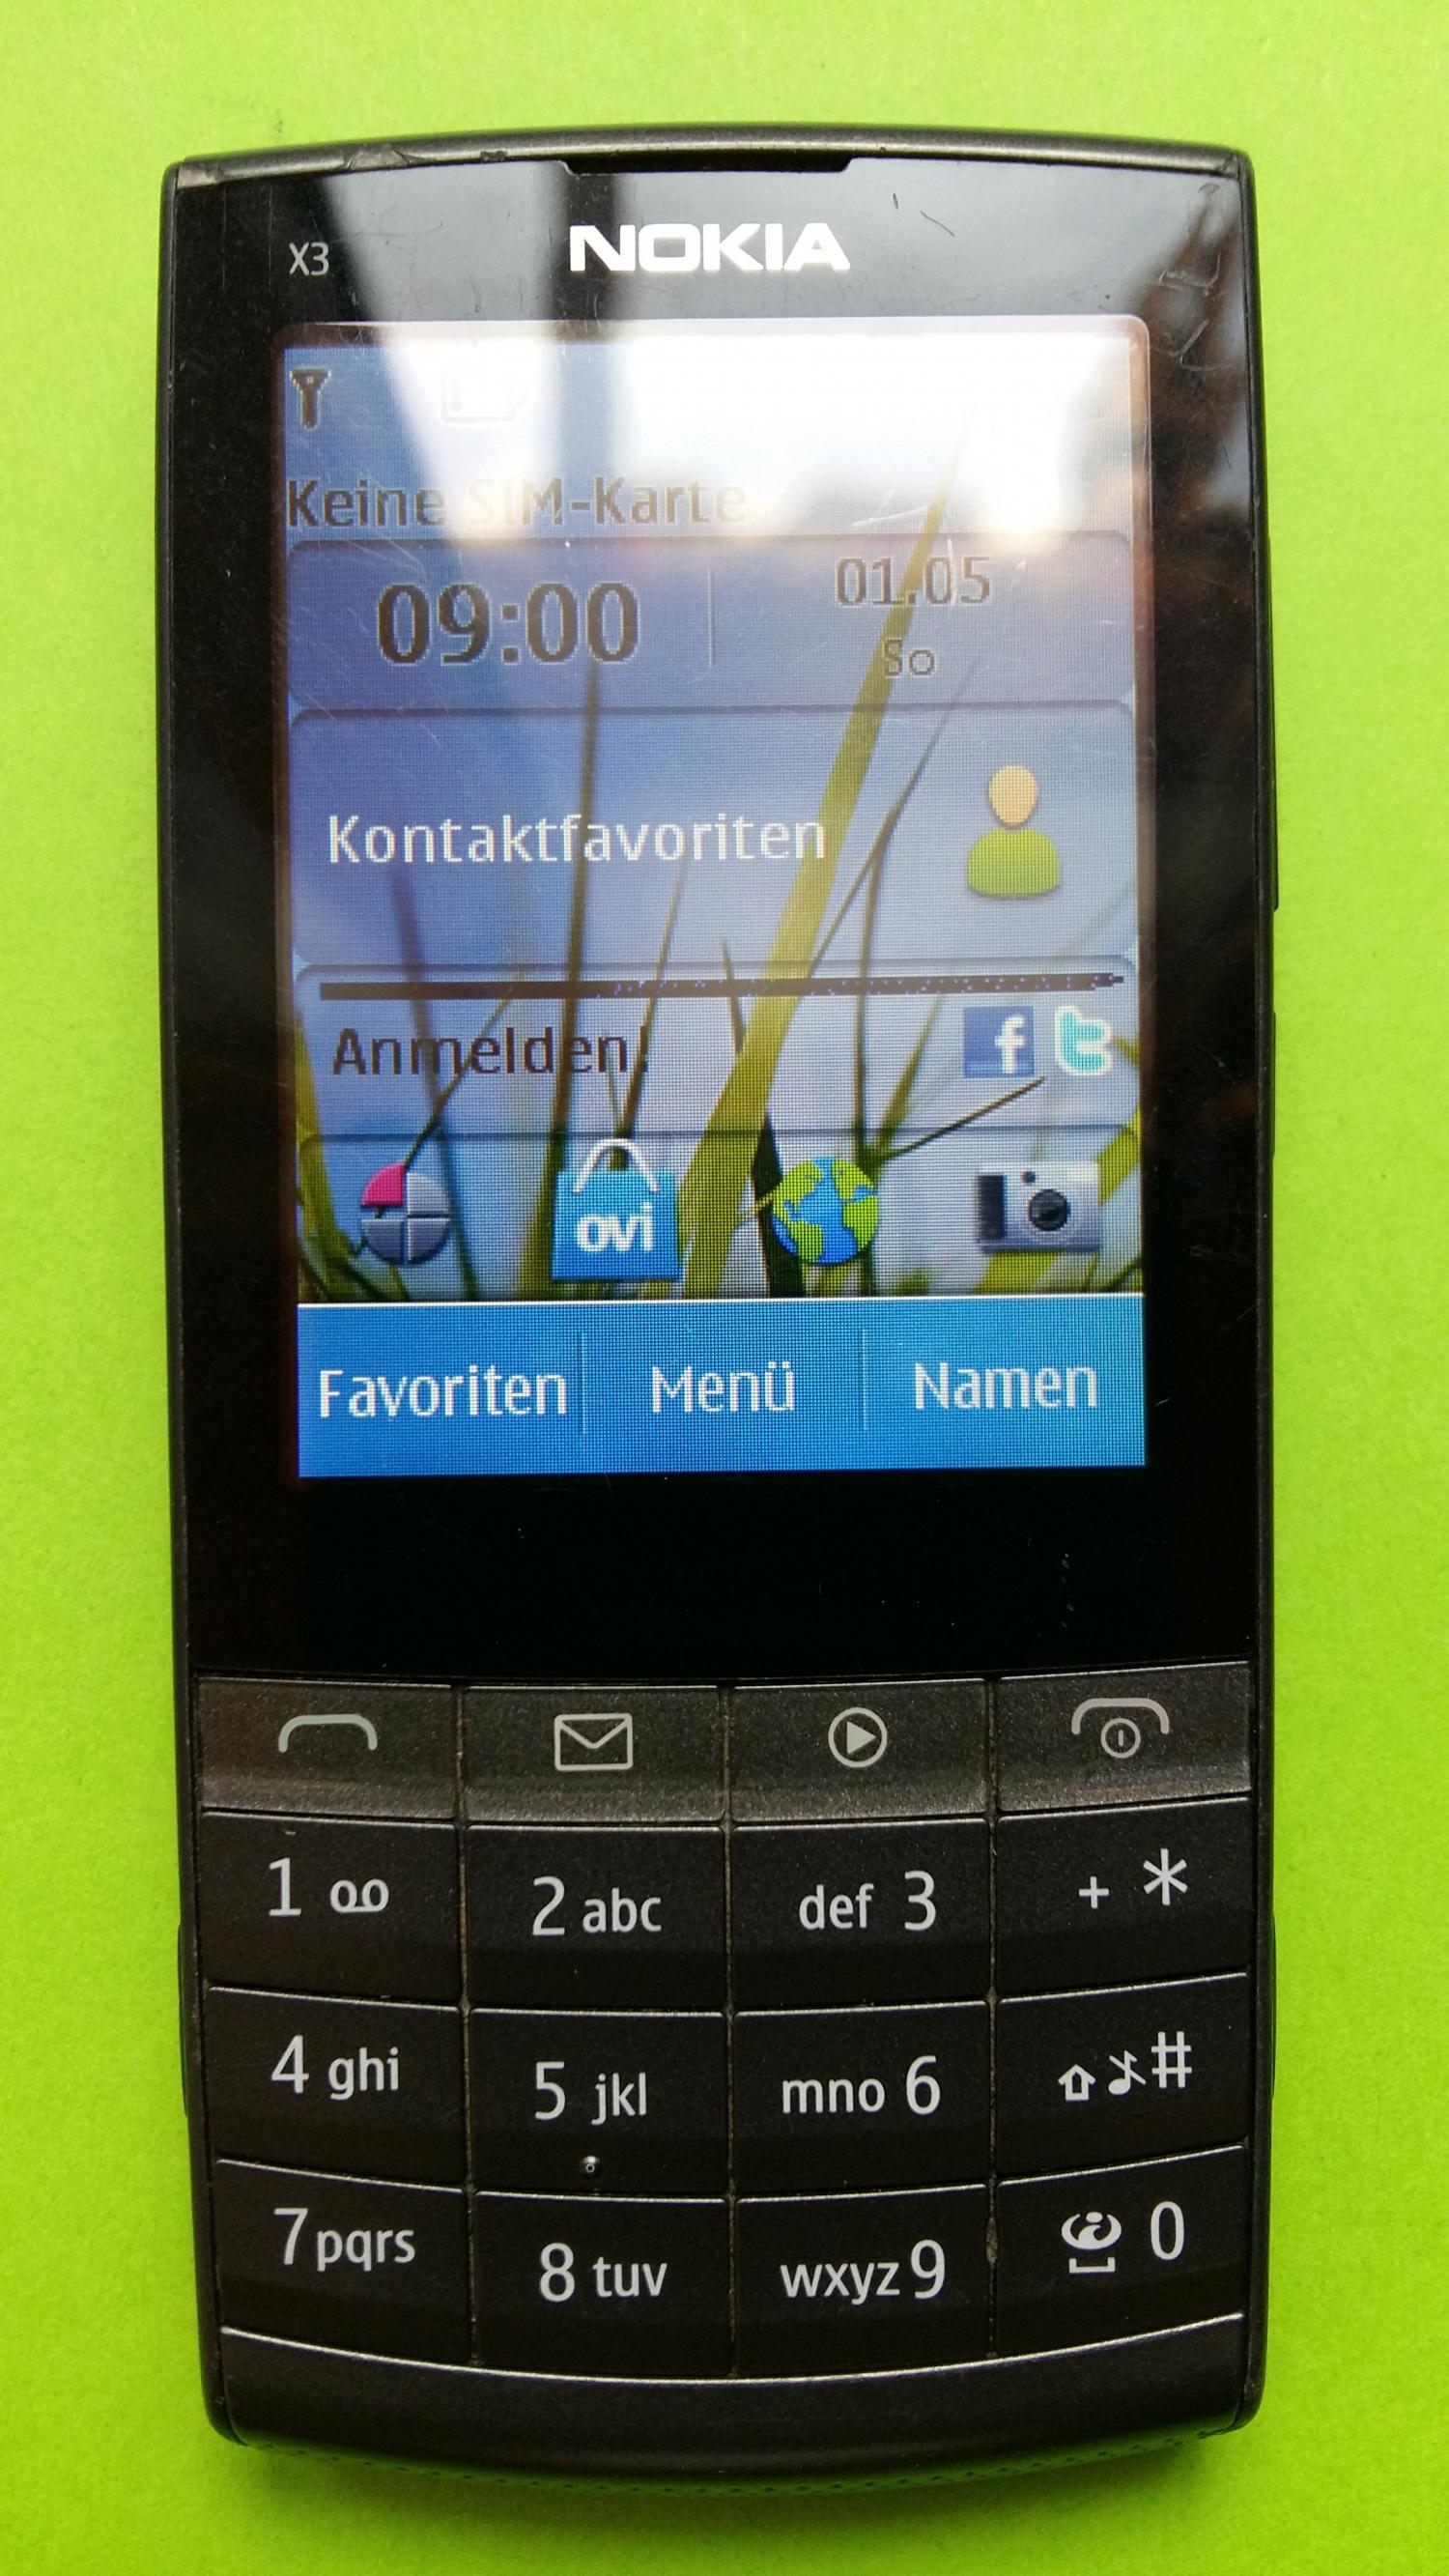 image-7299909-Nokia X3-02 (1)1.jpg